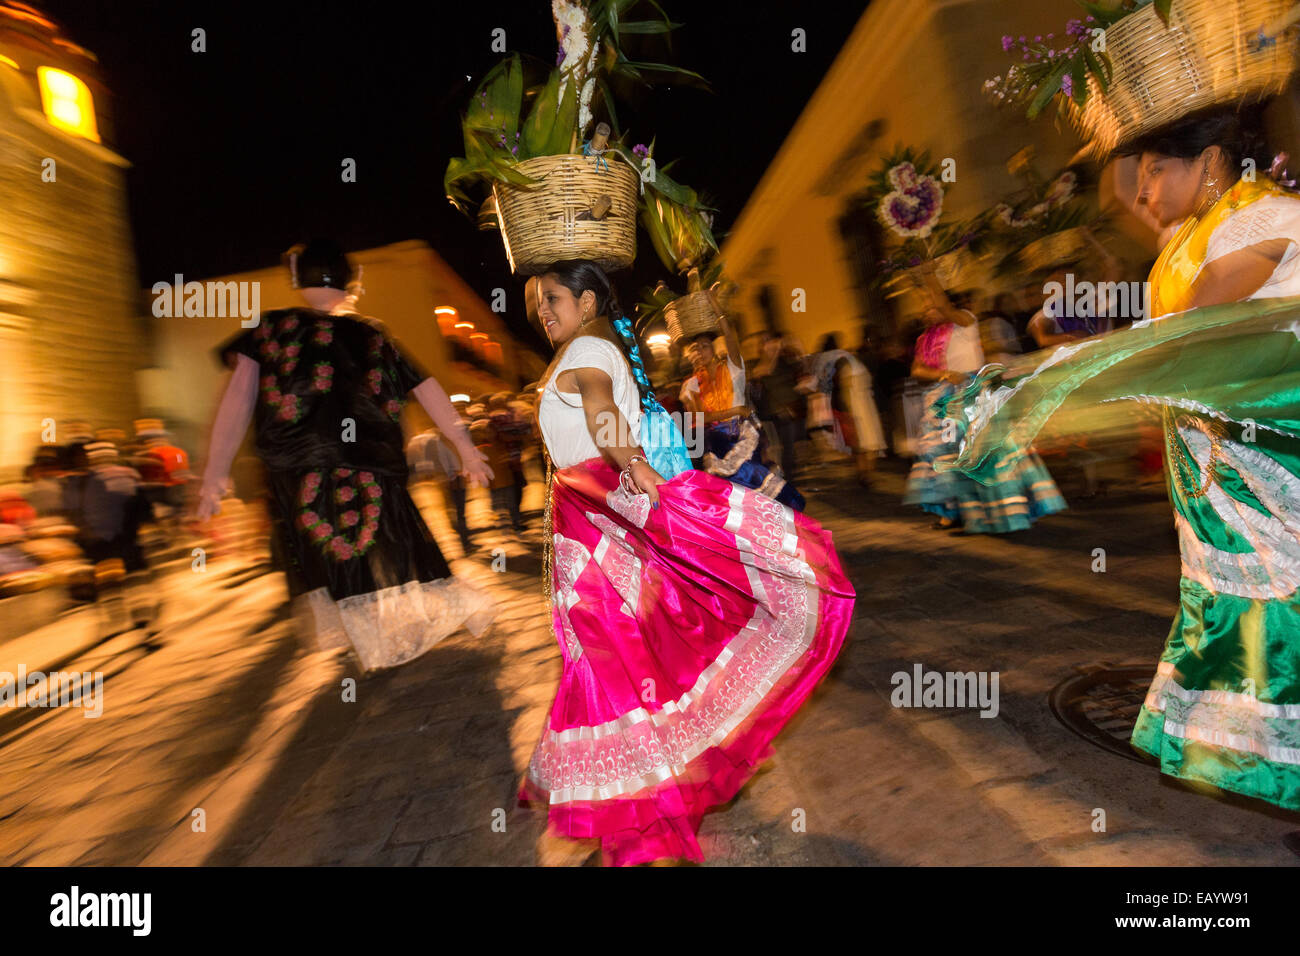 Traditionell kostümierten Volkstänzer während des Tages der Toten Festival bekannt in Spanisch als D'a de Muertos am 25. Oktober 2014 in Oaxaca, Mexiko. Stockfoto